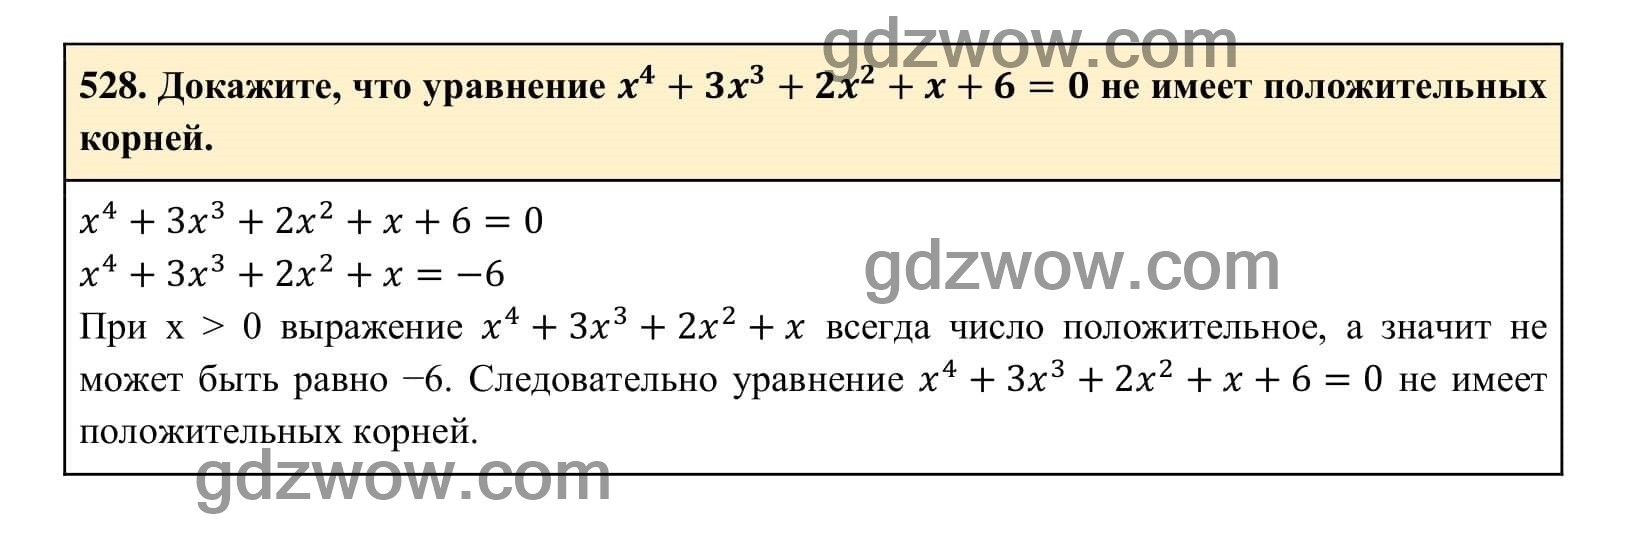 Упражнение 528 - ГДЗ по Алгебре 7 класс Учебник Макарычев (решебник) - GDZwow